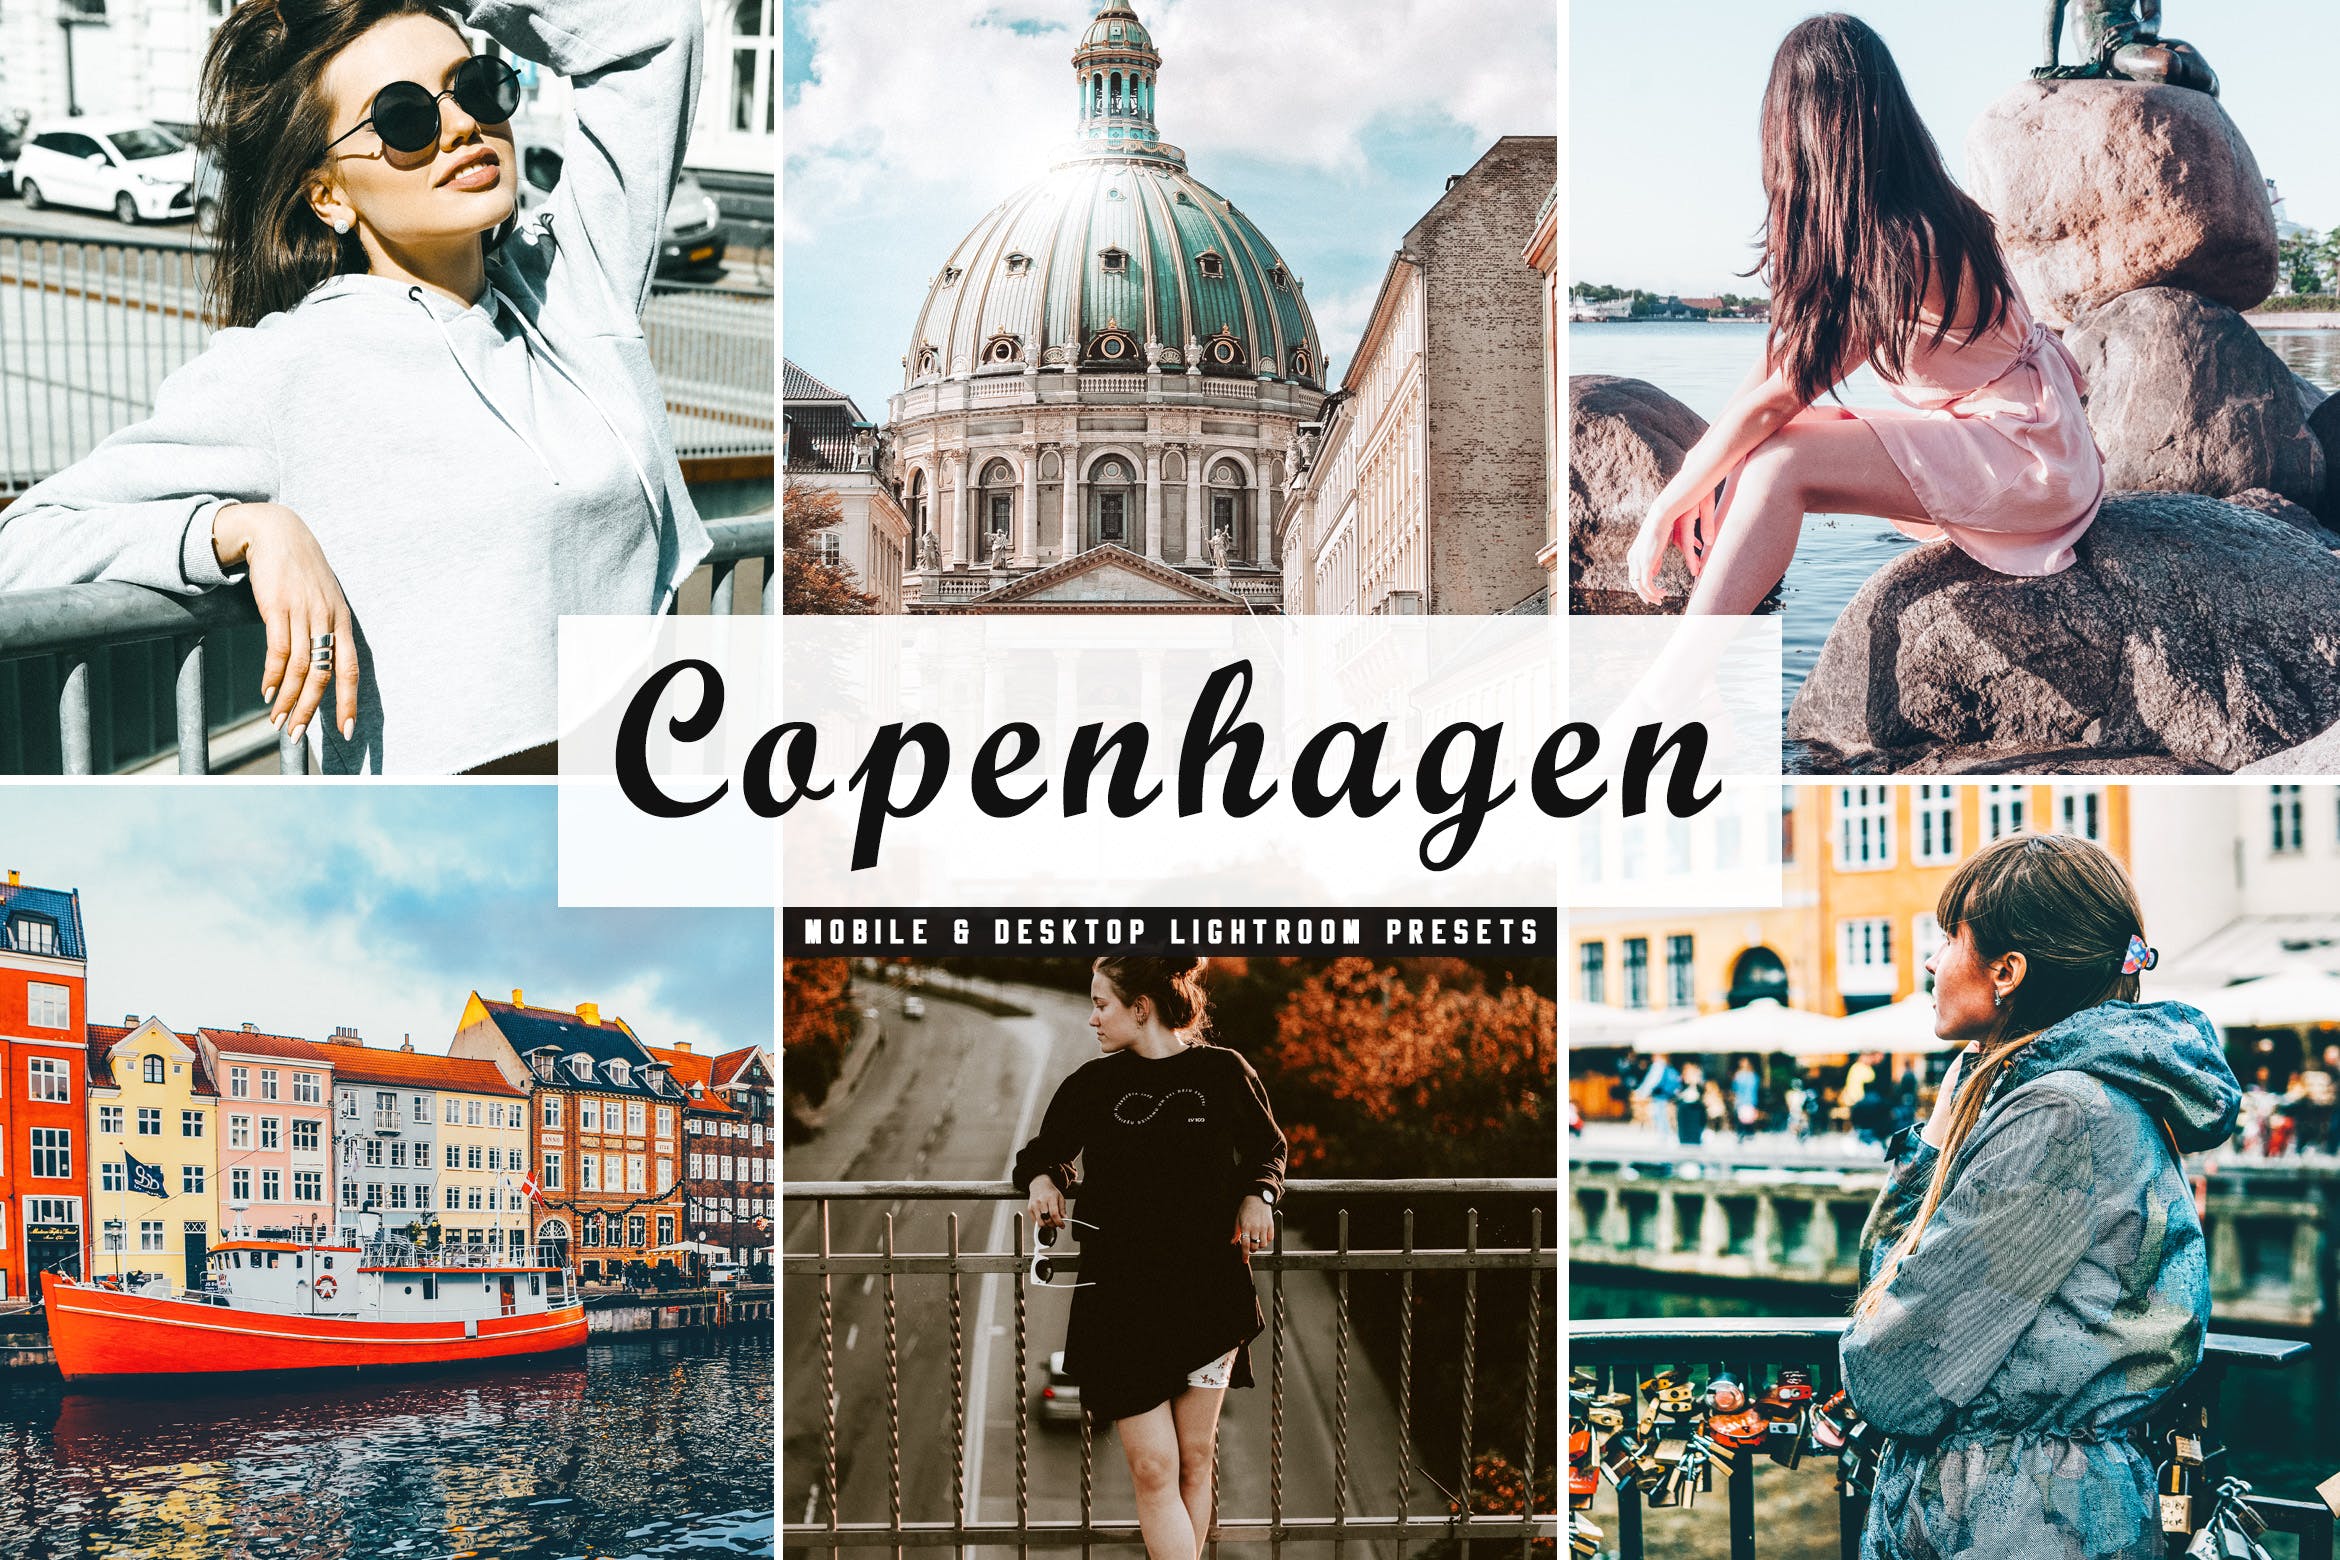 人物风景摄影亮色暖色调处理16图库精选LR预设下载 Copenhagen Mobile & Desktop Lightroom Presets插图